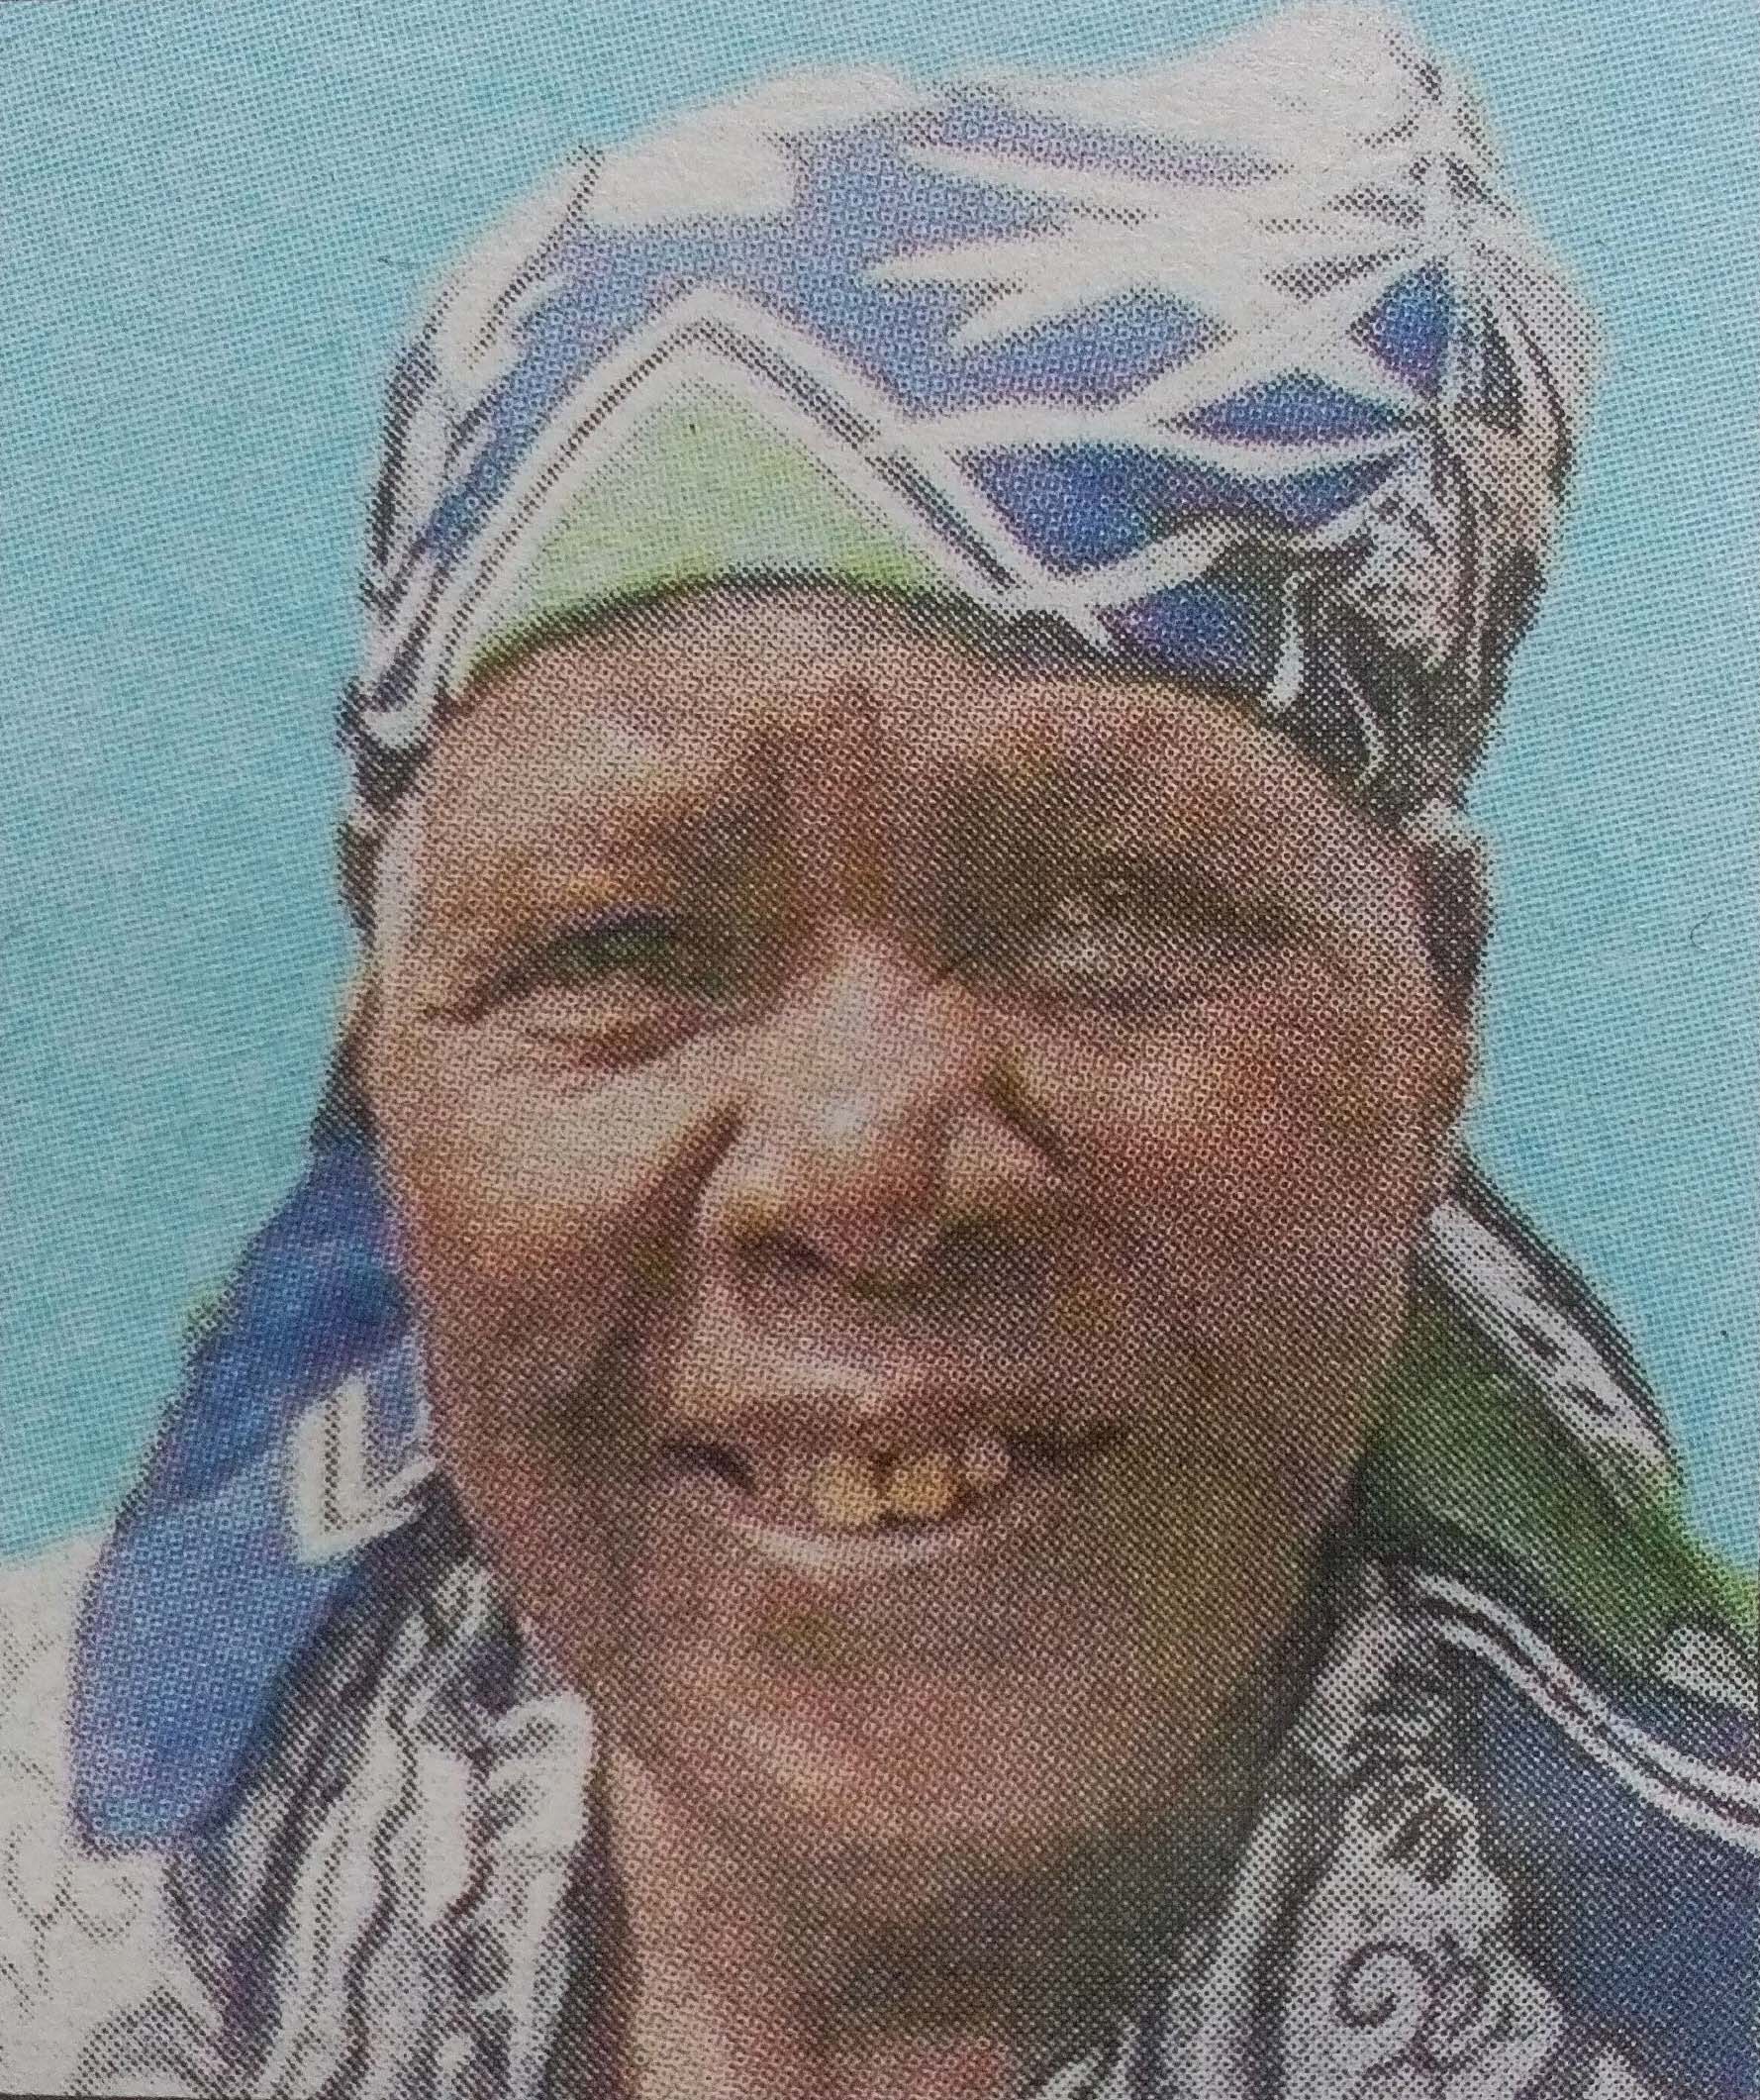 Obituary Image of Ruth Wanja Mbugua